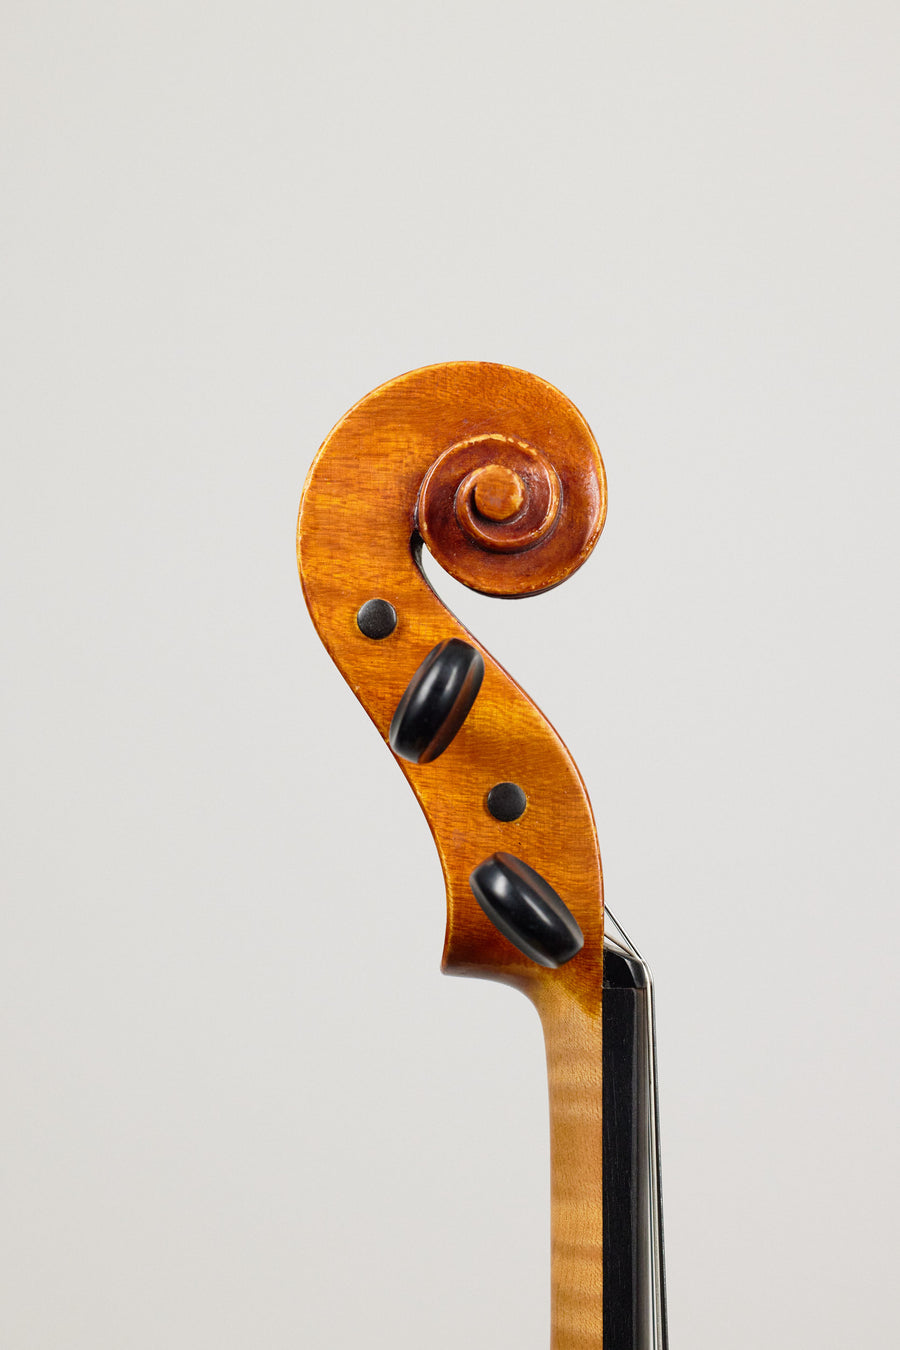 A Modern Viola From 1992 By Geoffrey Ovington. 16 5/8”